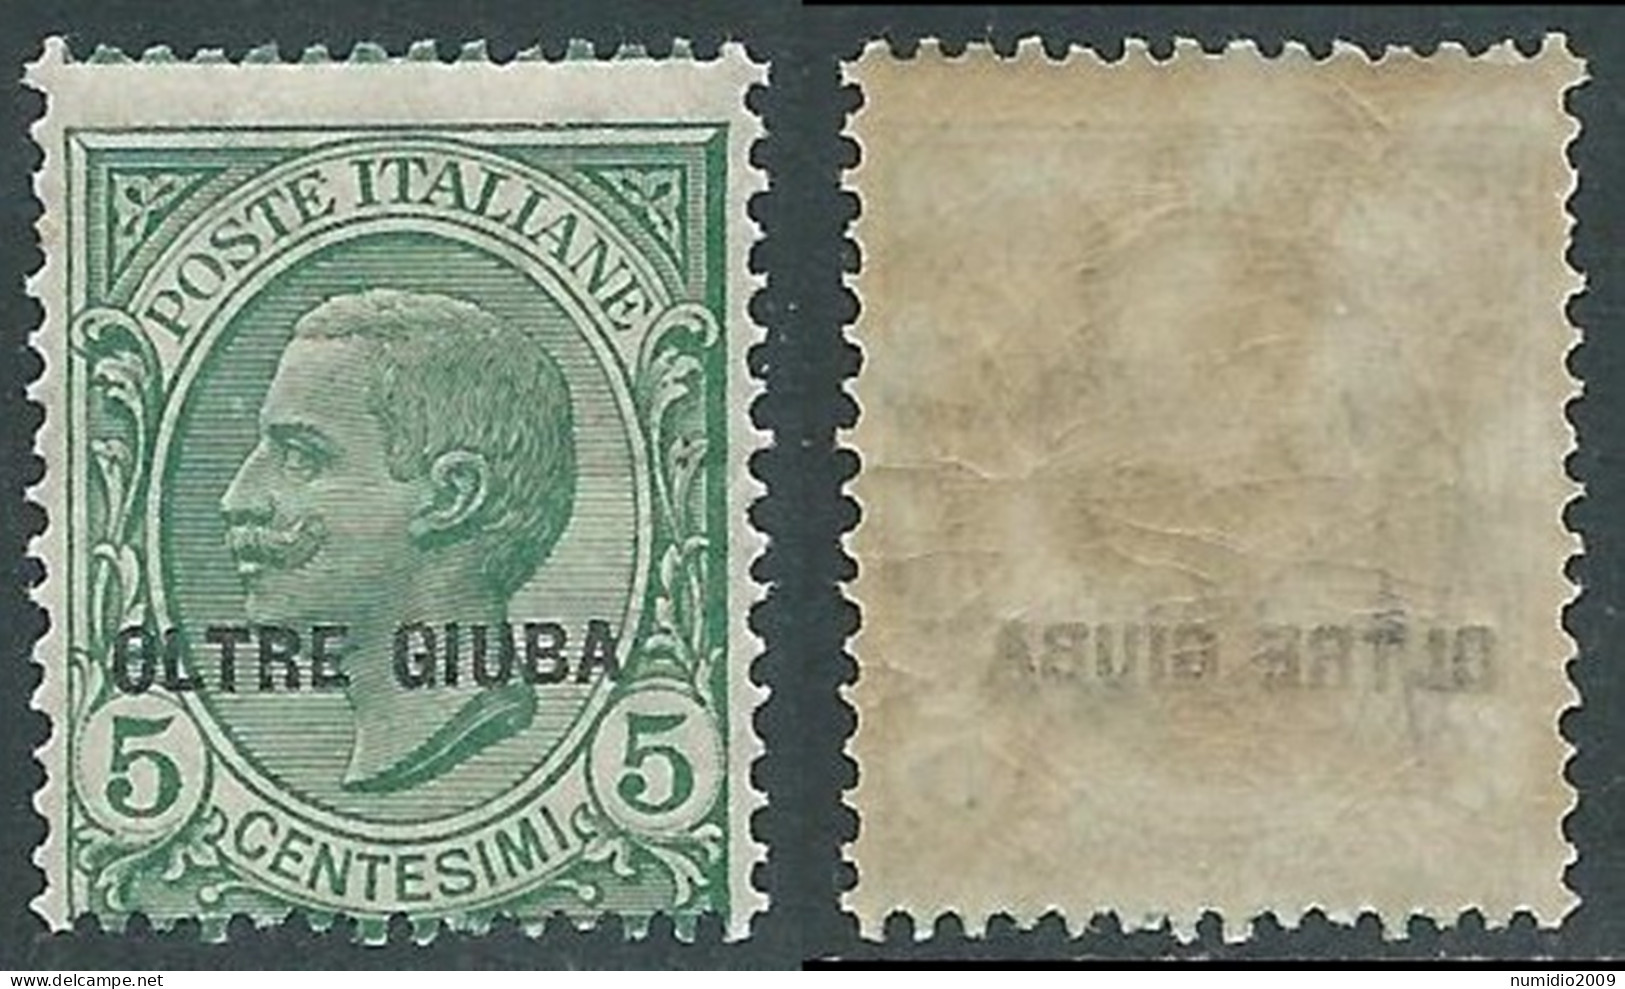 1925 OLTRE GIUBA EFFIGIE 5 CENT DECALCO MNH ** - I55-3 - Oltre Giuba